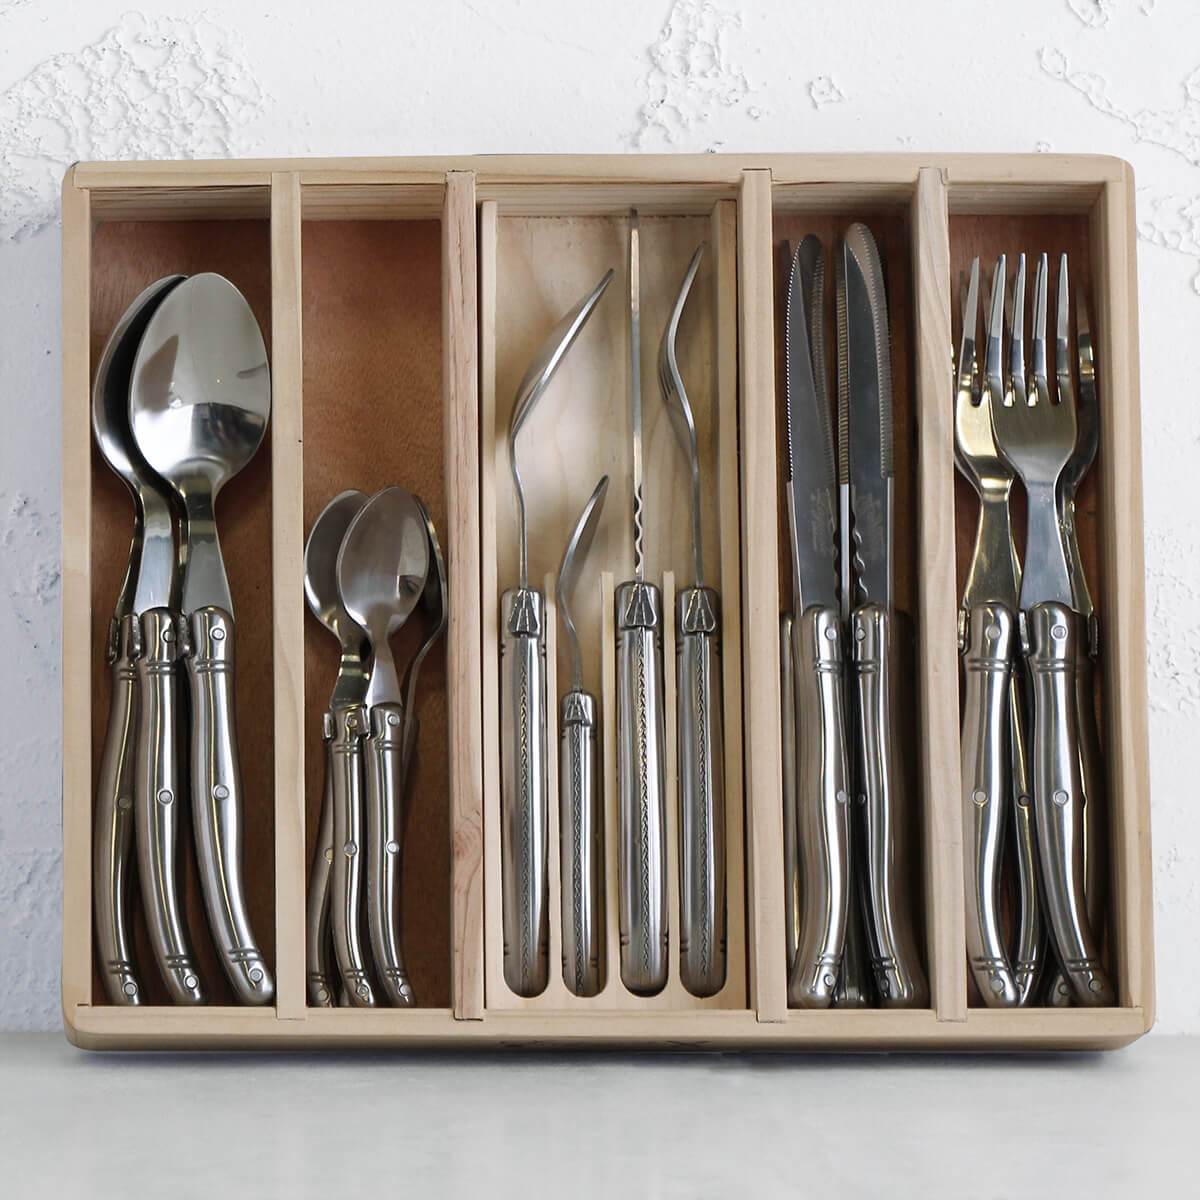 laguiole cutlery set